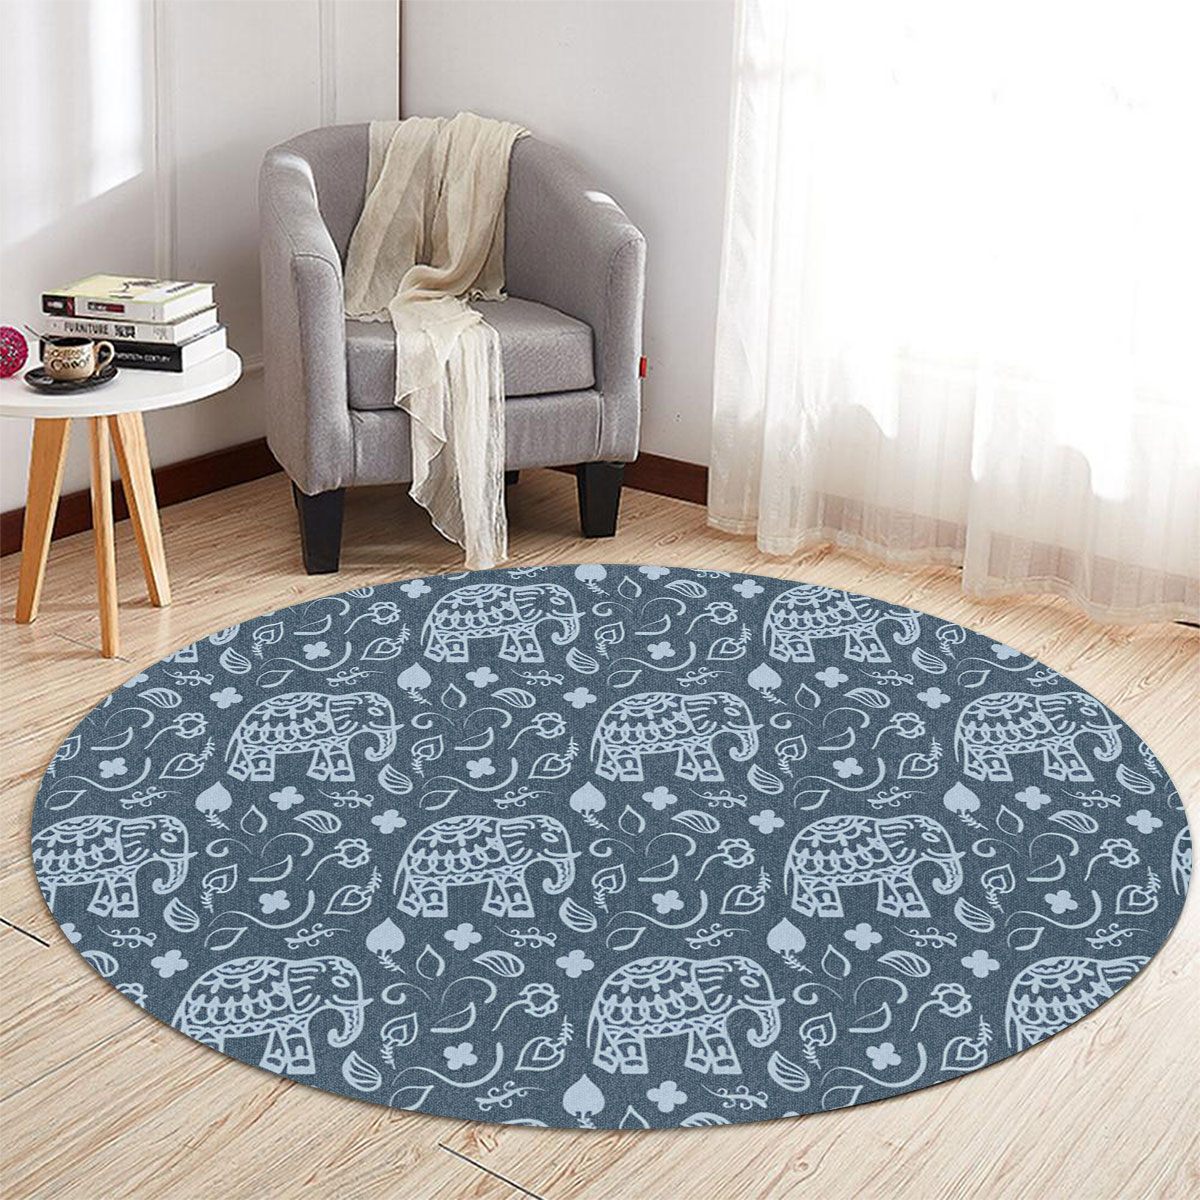 Indian Elephant Blue Round Carpet 6